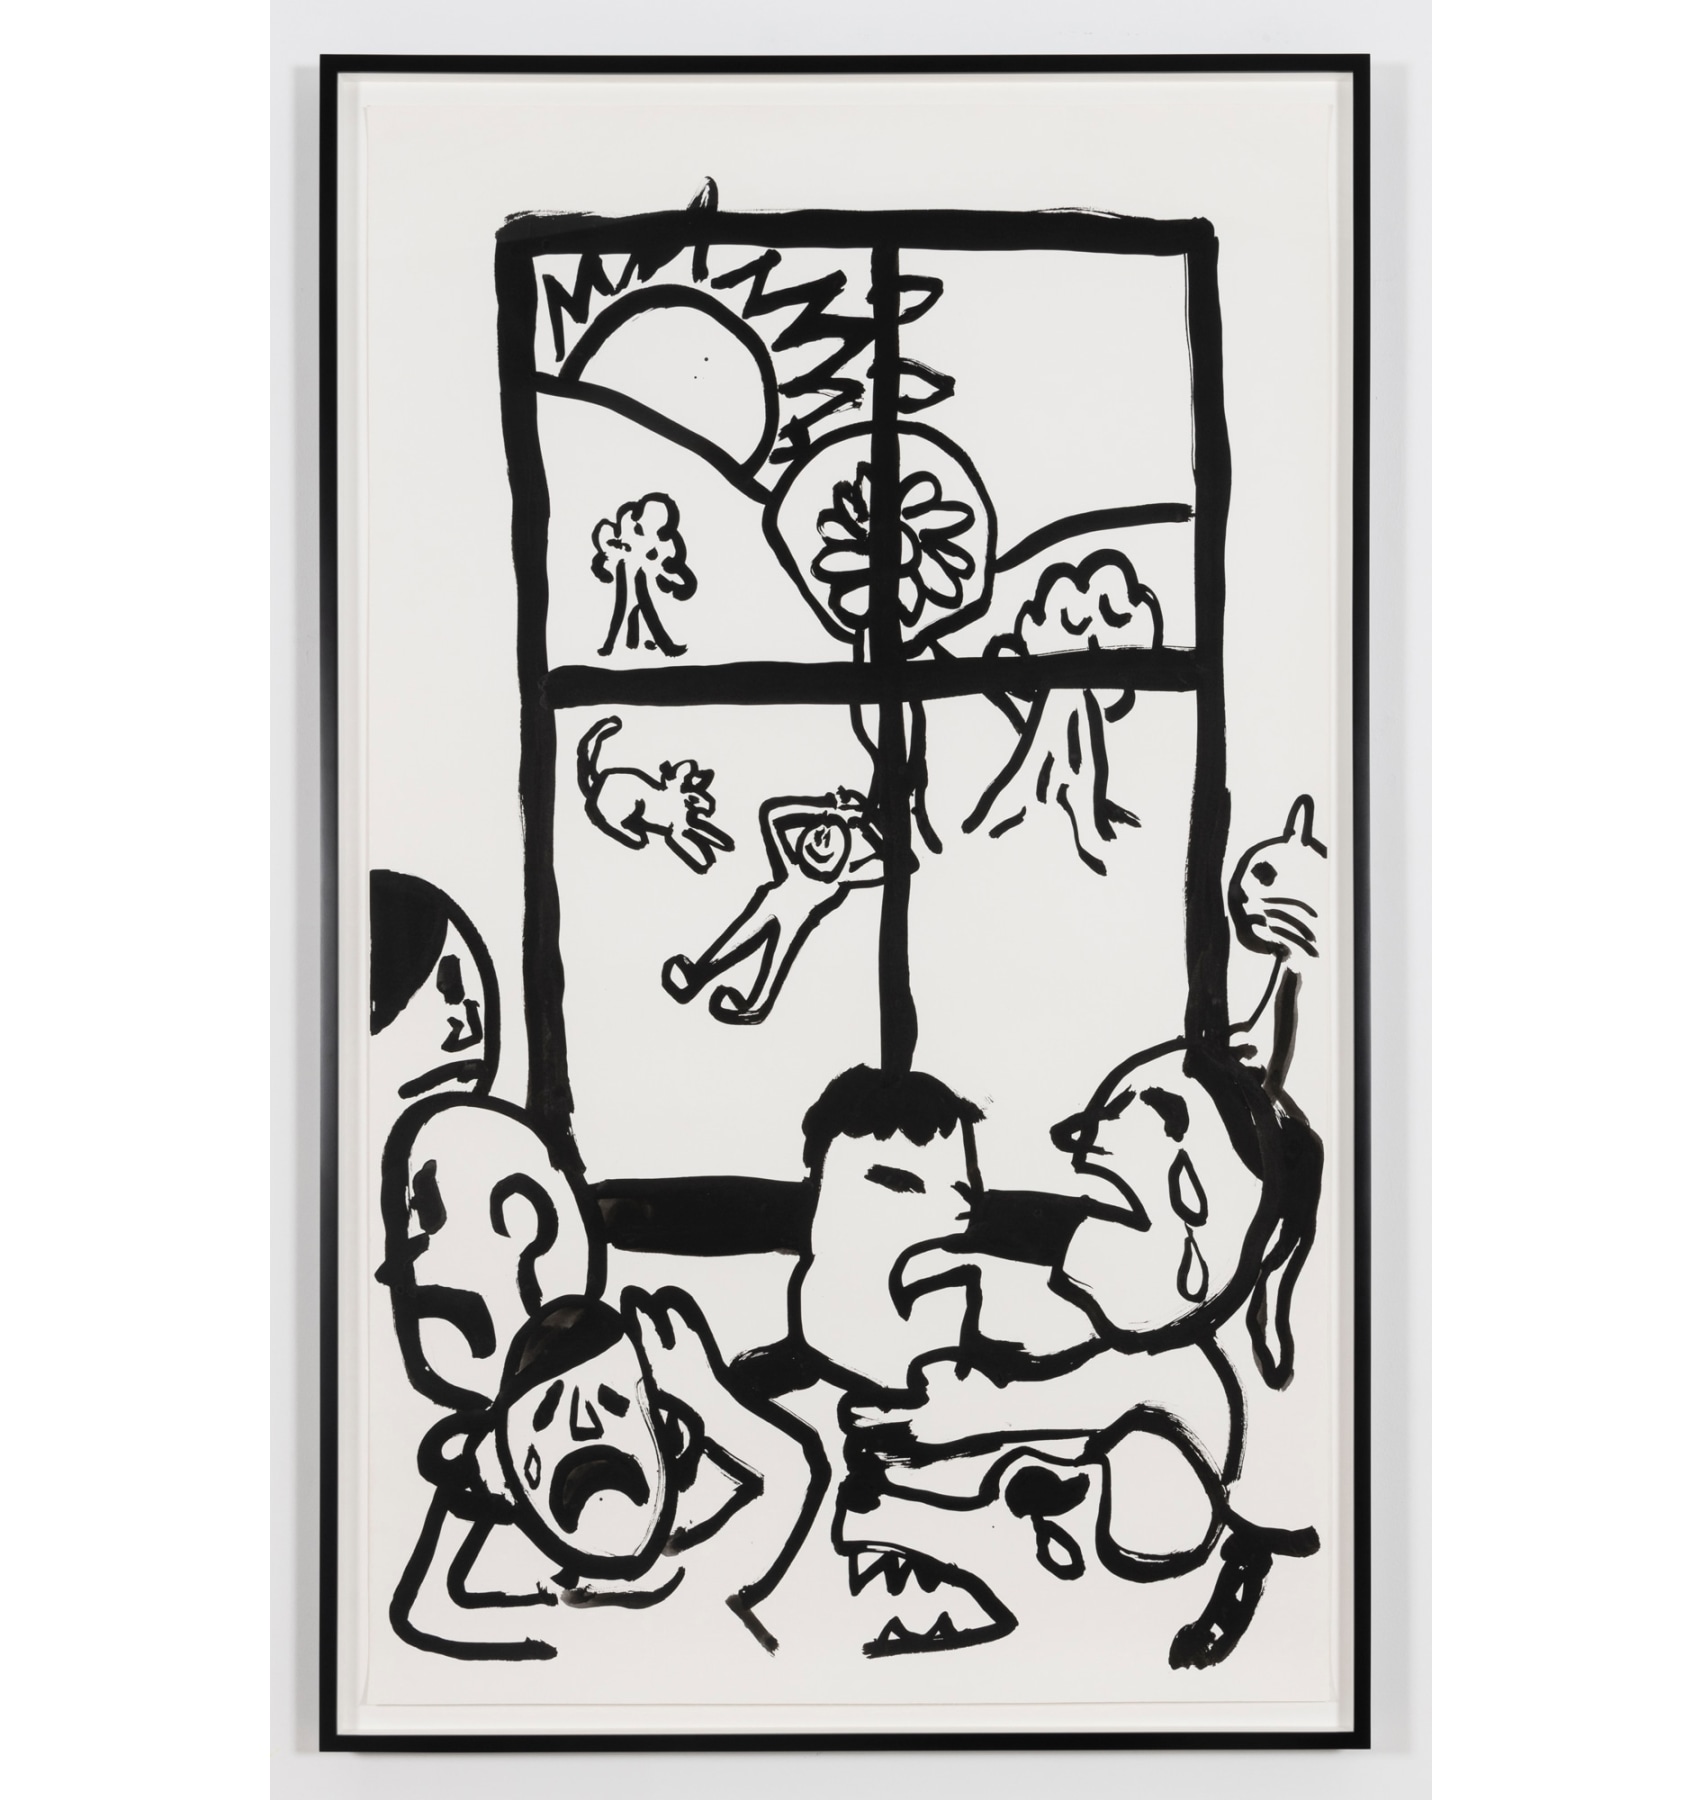 Paul Chan - Drawings for Word Book by Ludwig Wittgenstein - Viewing Room - Greene Naftali Viewing Room